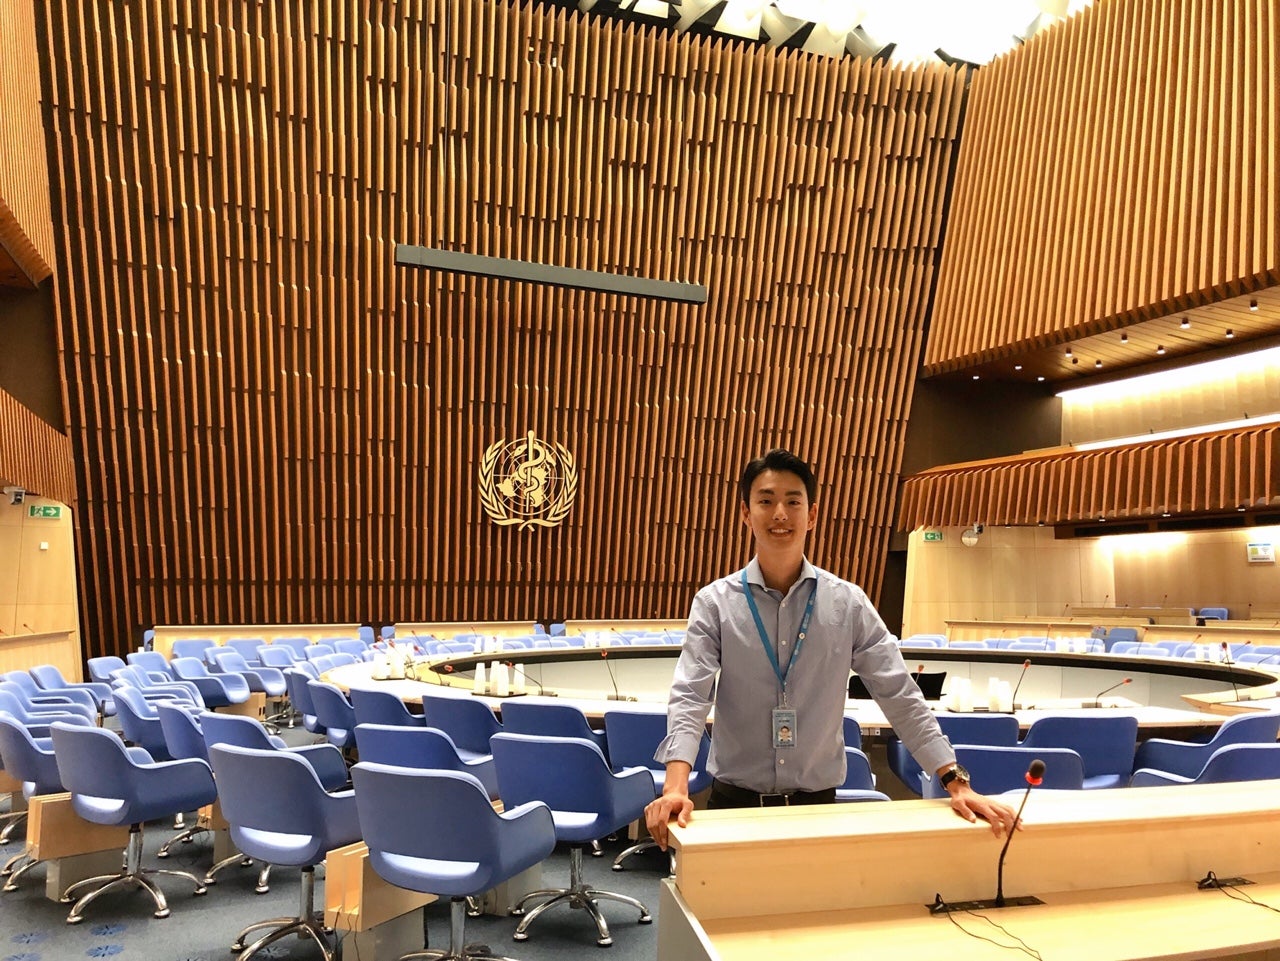 John Kim in a board room at the World Health Organization